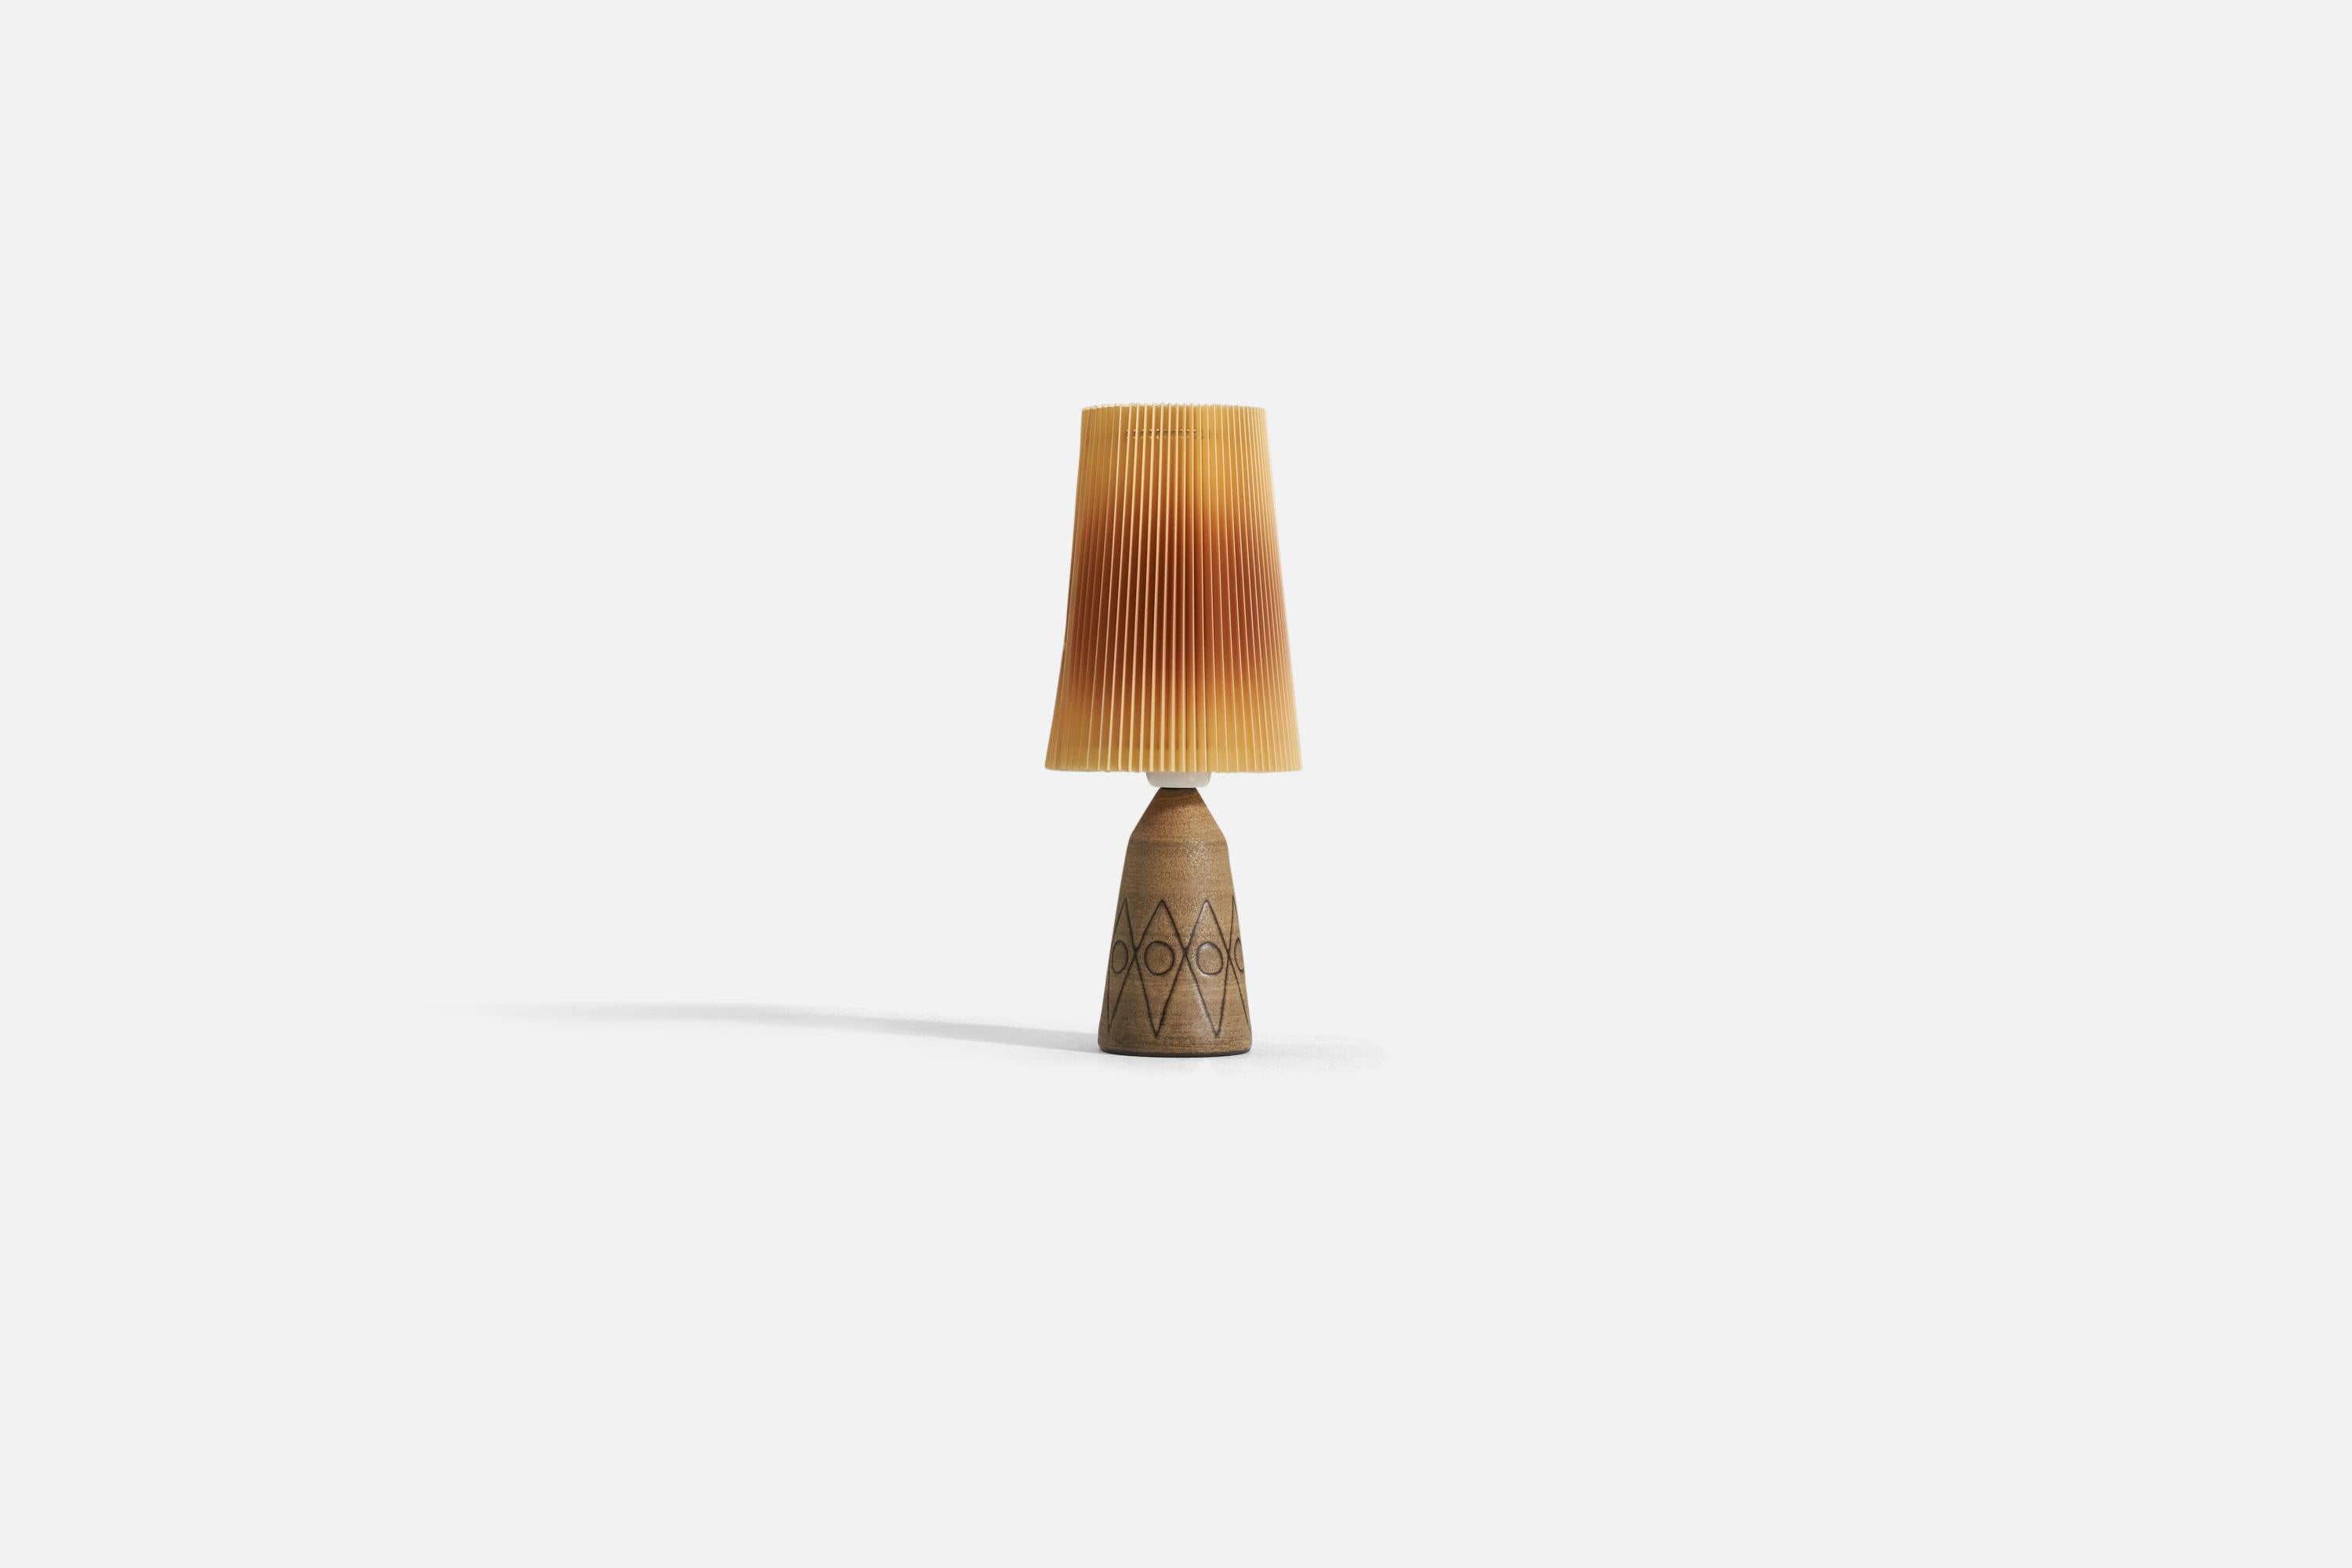 Lampe de table en céramique brune incisée, conçue et produite en Suède, vers les années 1960. 

Vendu avec un abat-jour illustré. Les mesures indiquées comprennent l'abat-jour.